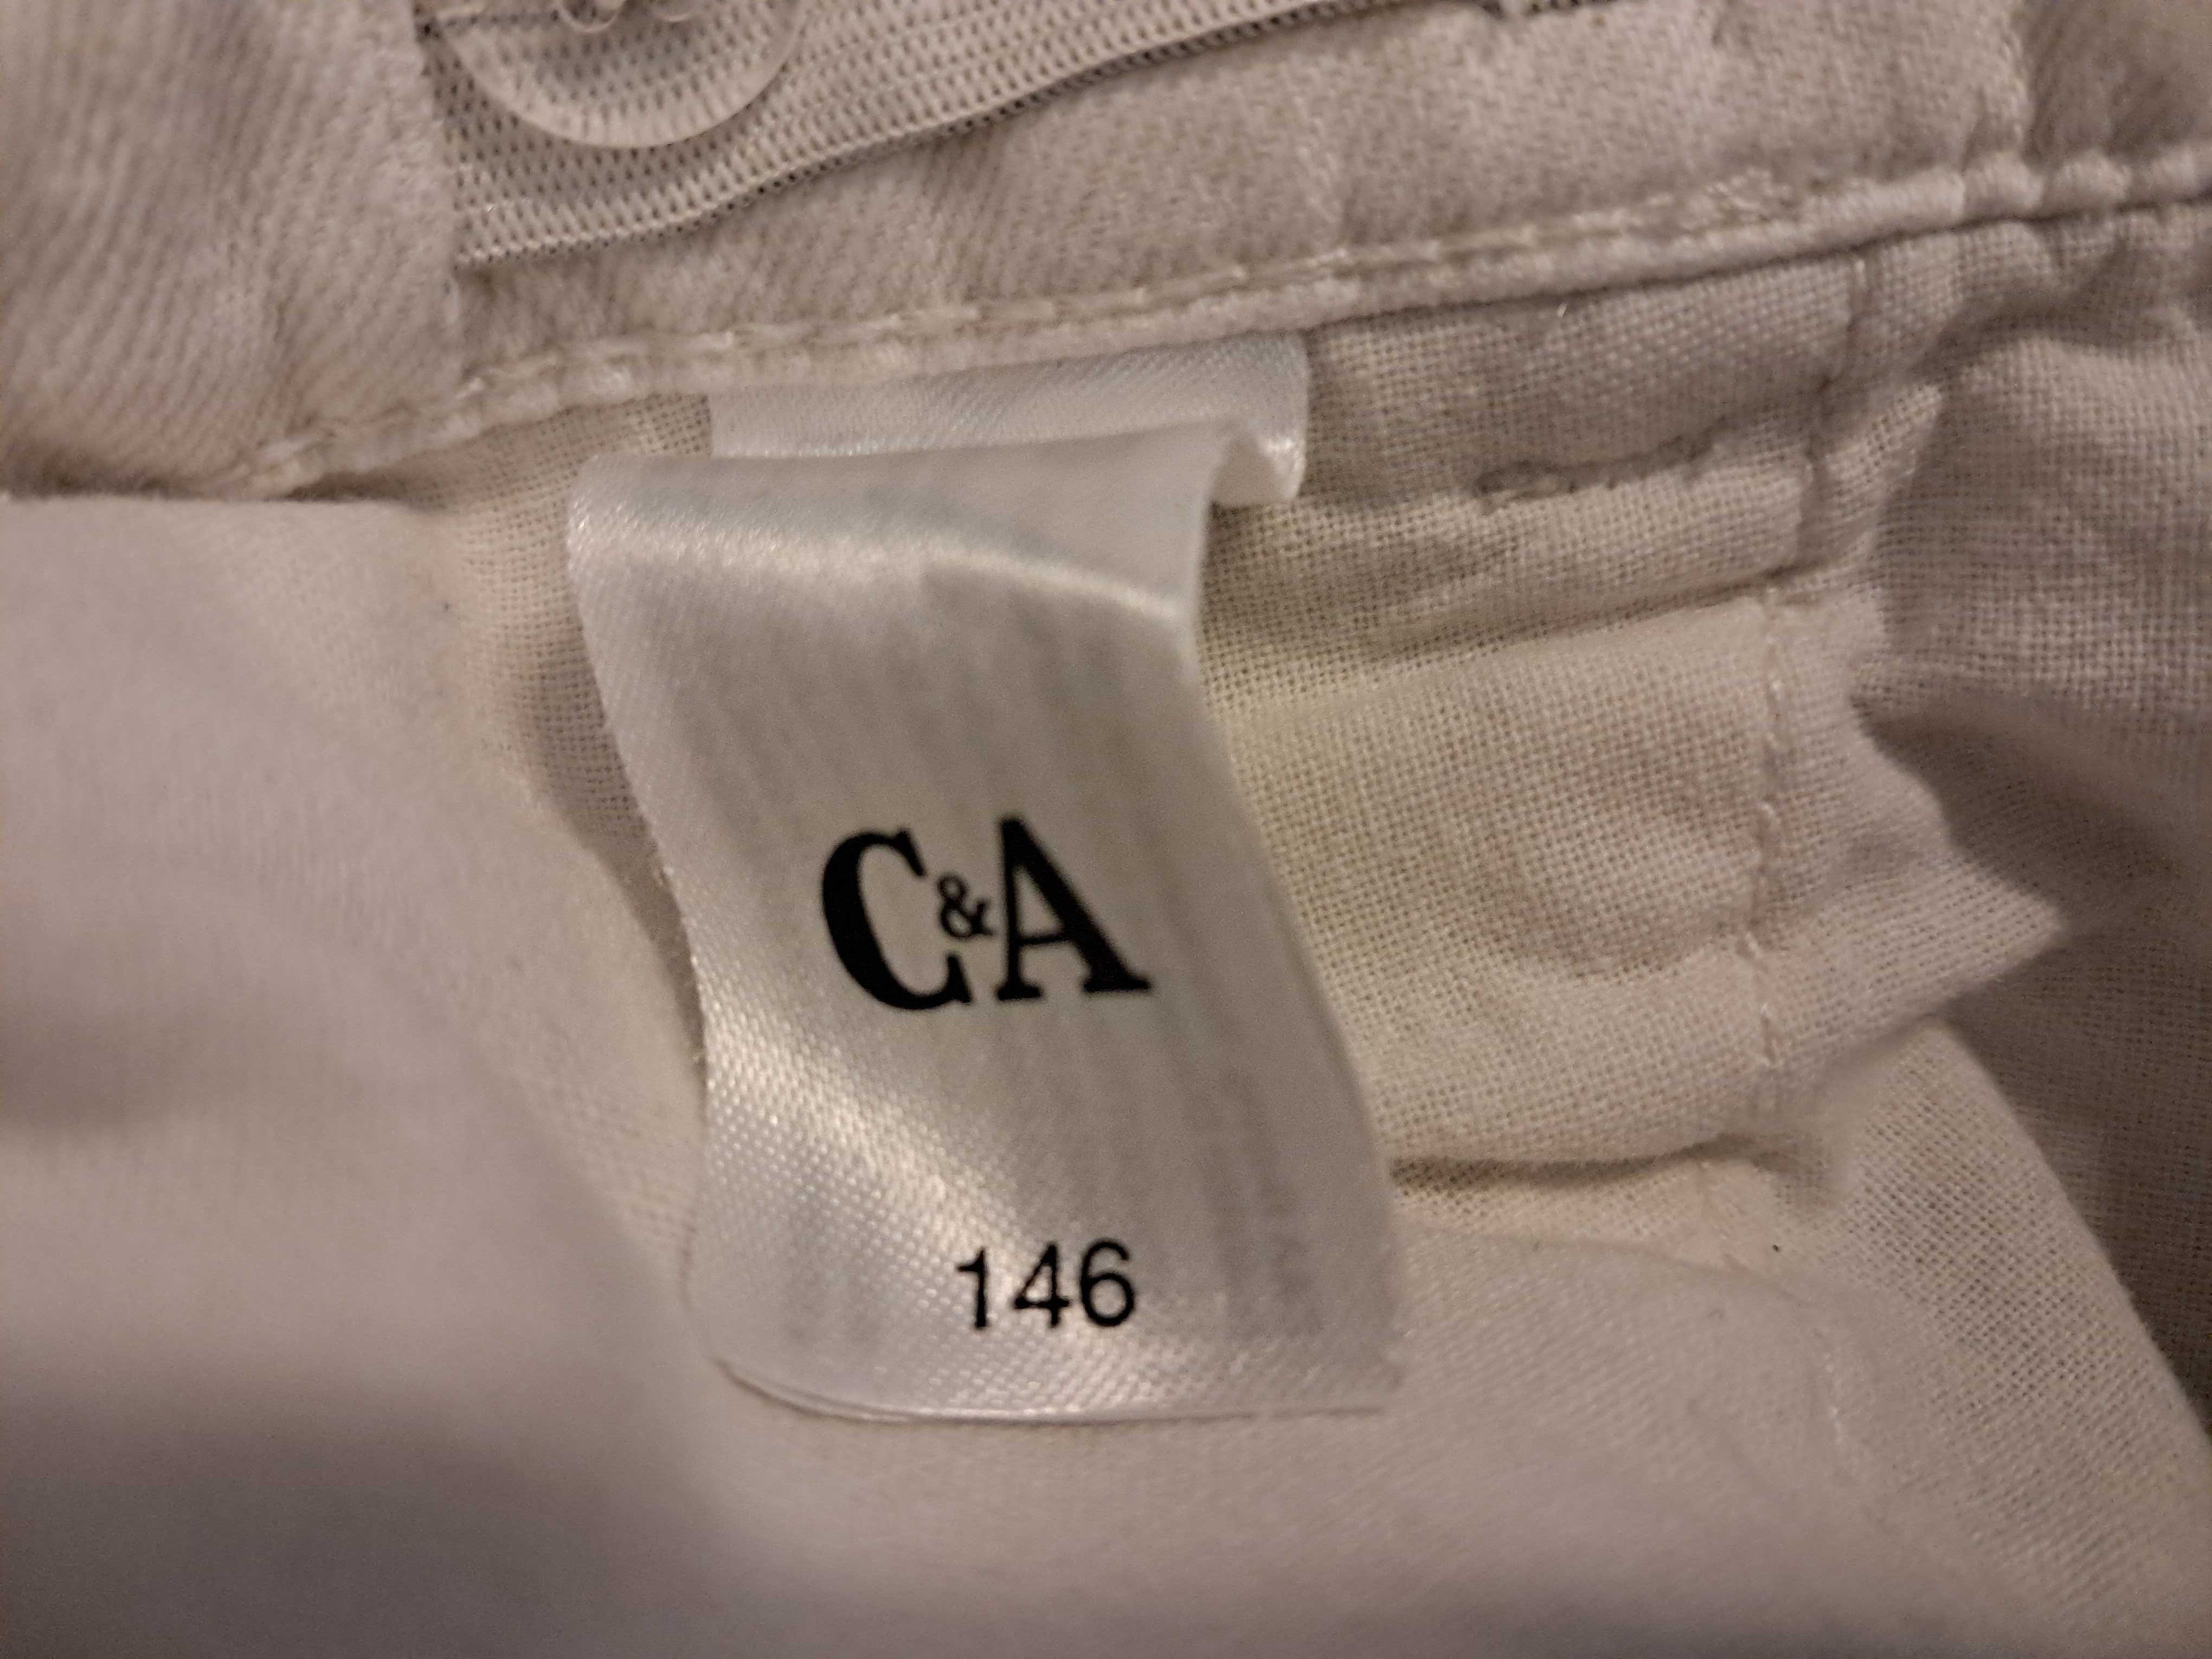 Krótkie spodnie C&A dla chłopca - rozmiar 146 - stan bardzo dobry